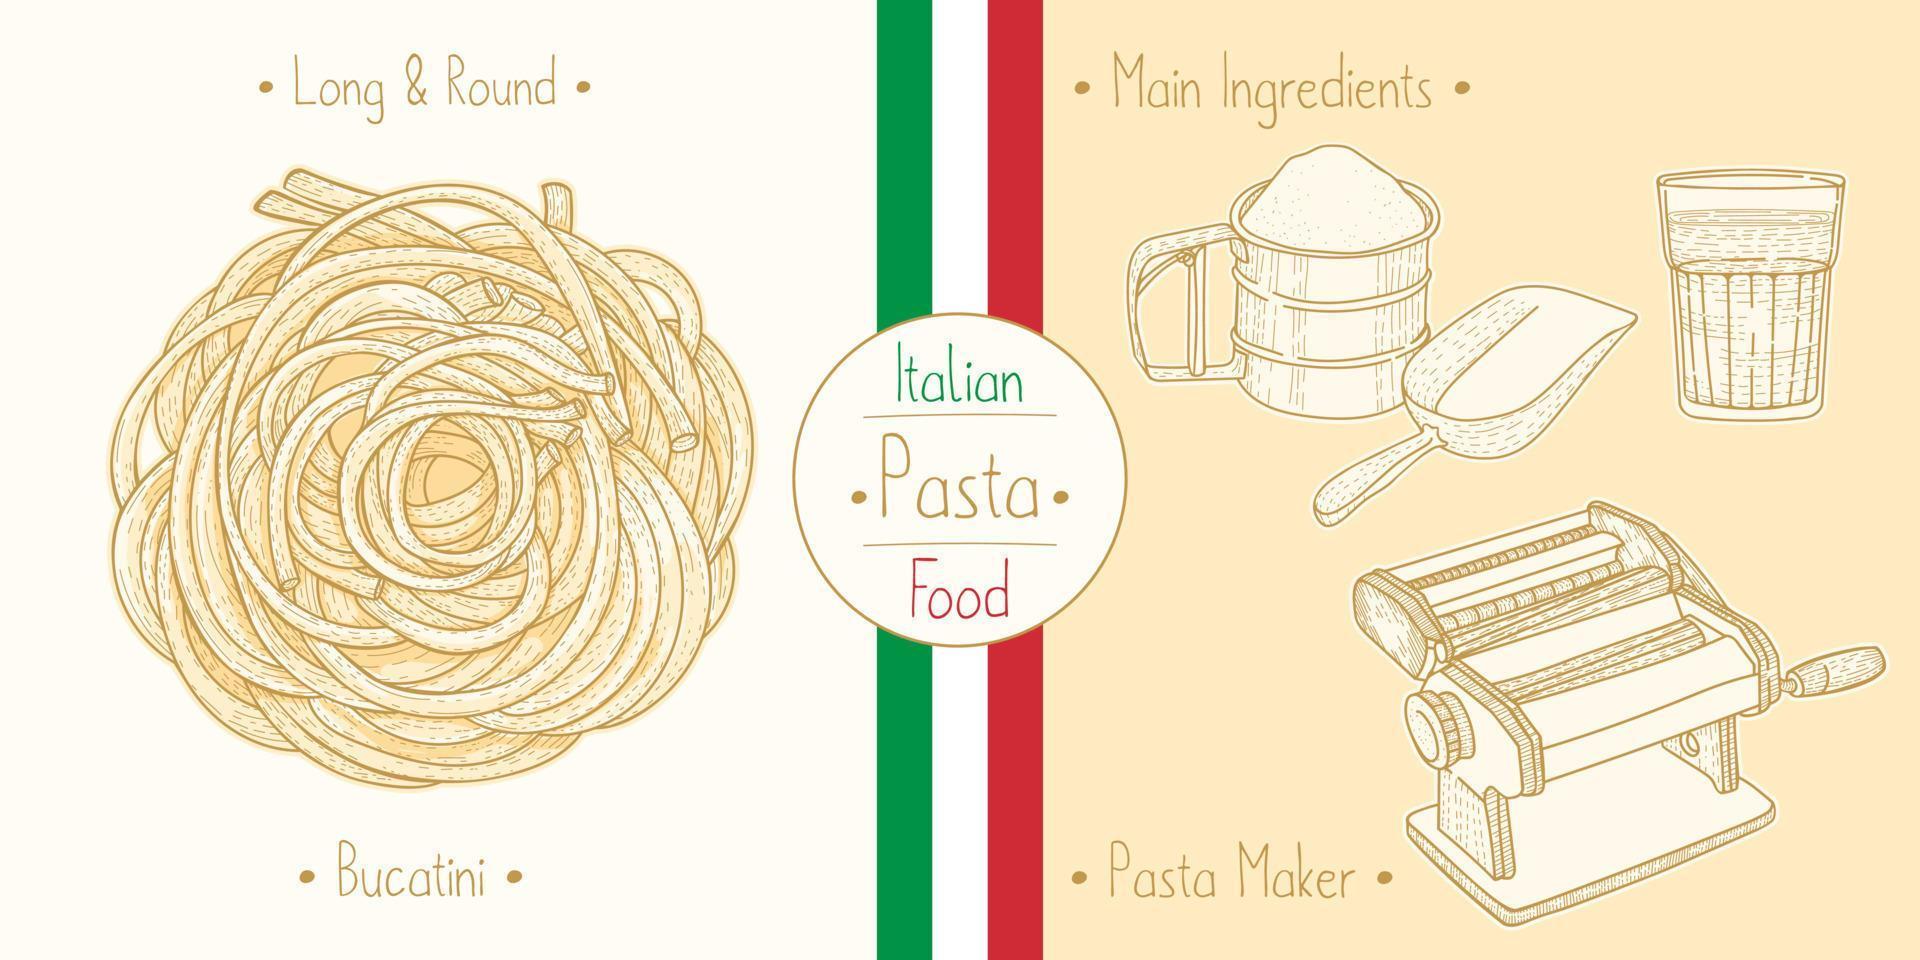 laga italiensk mat sphagetti-liknande pasta bucatini och huvudingredienser och pastatillverkningsutrustning, skissa illustration i vintagestil vektor